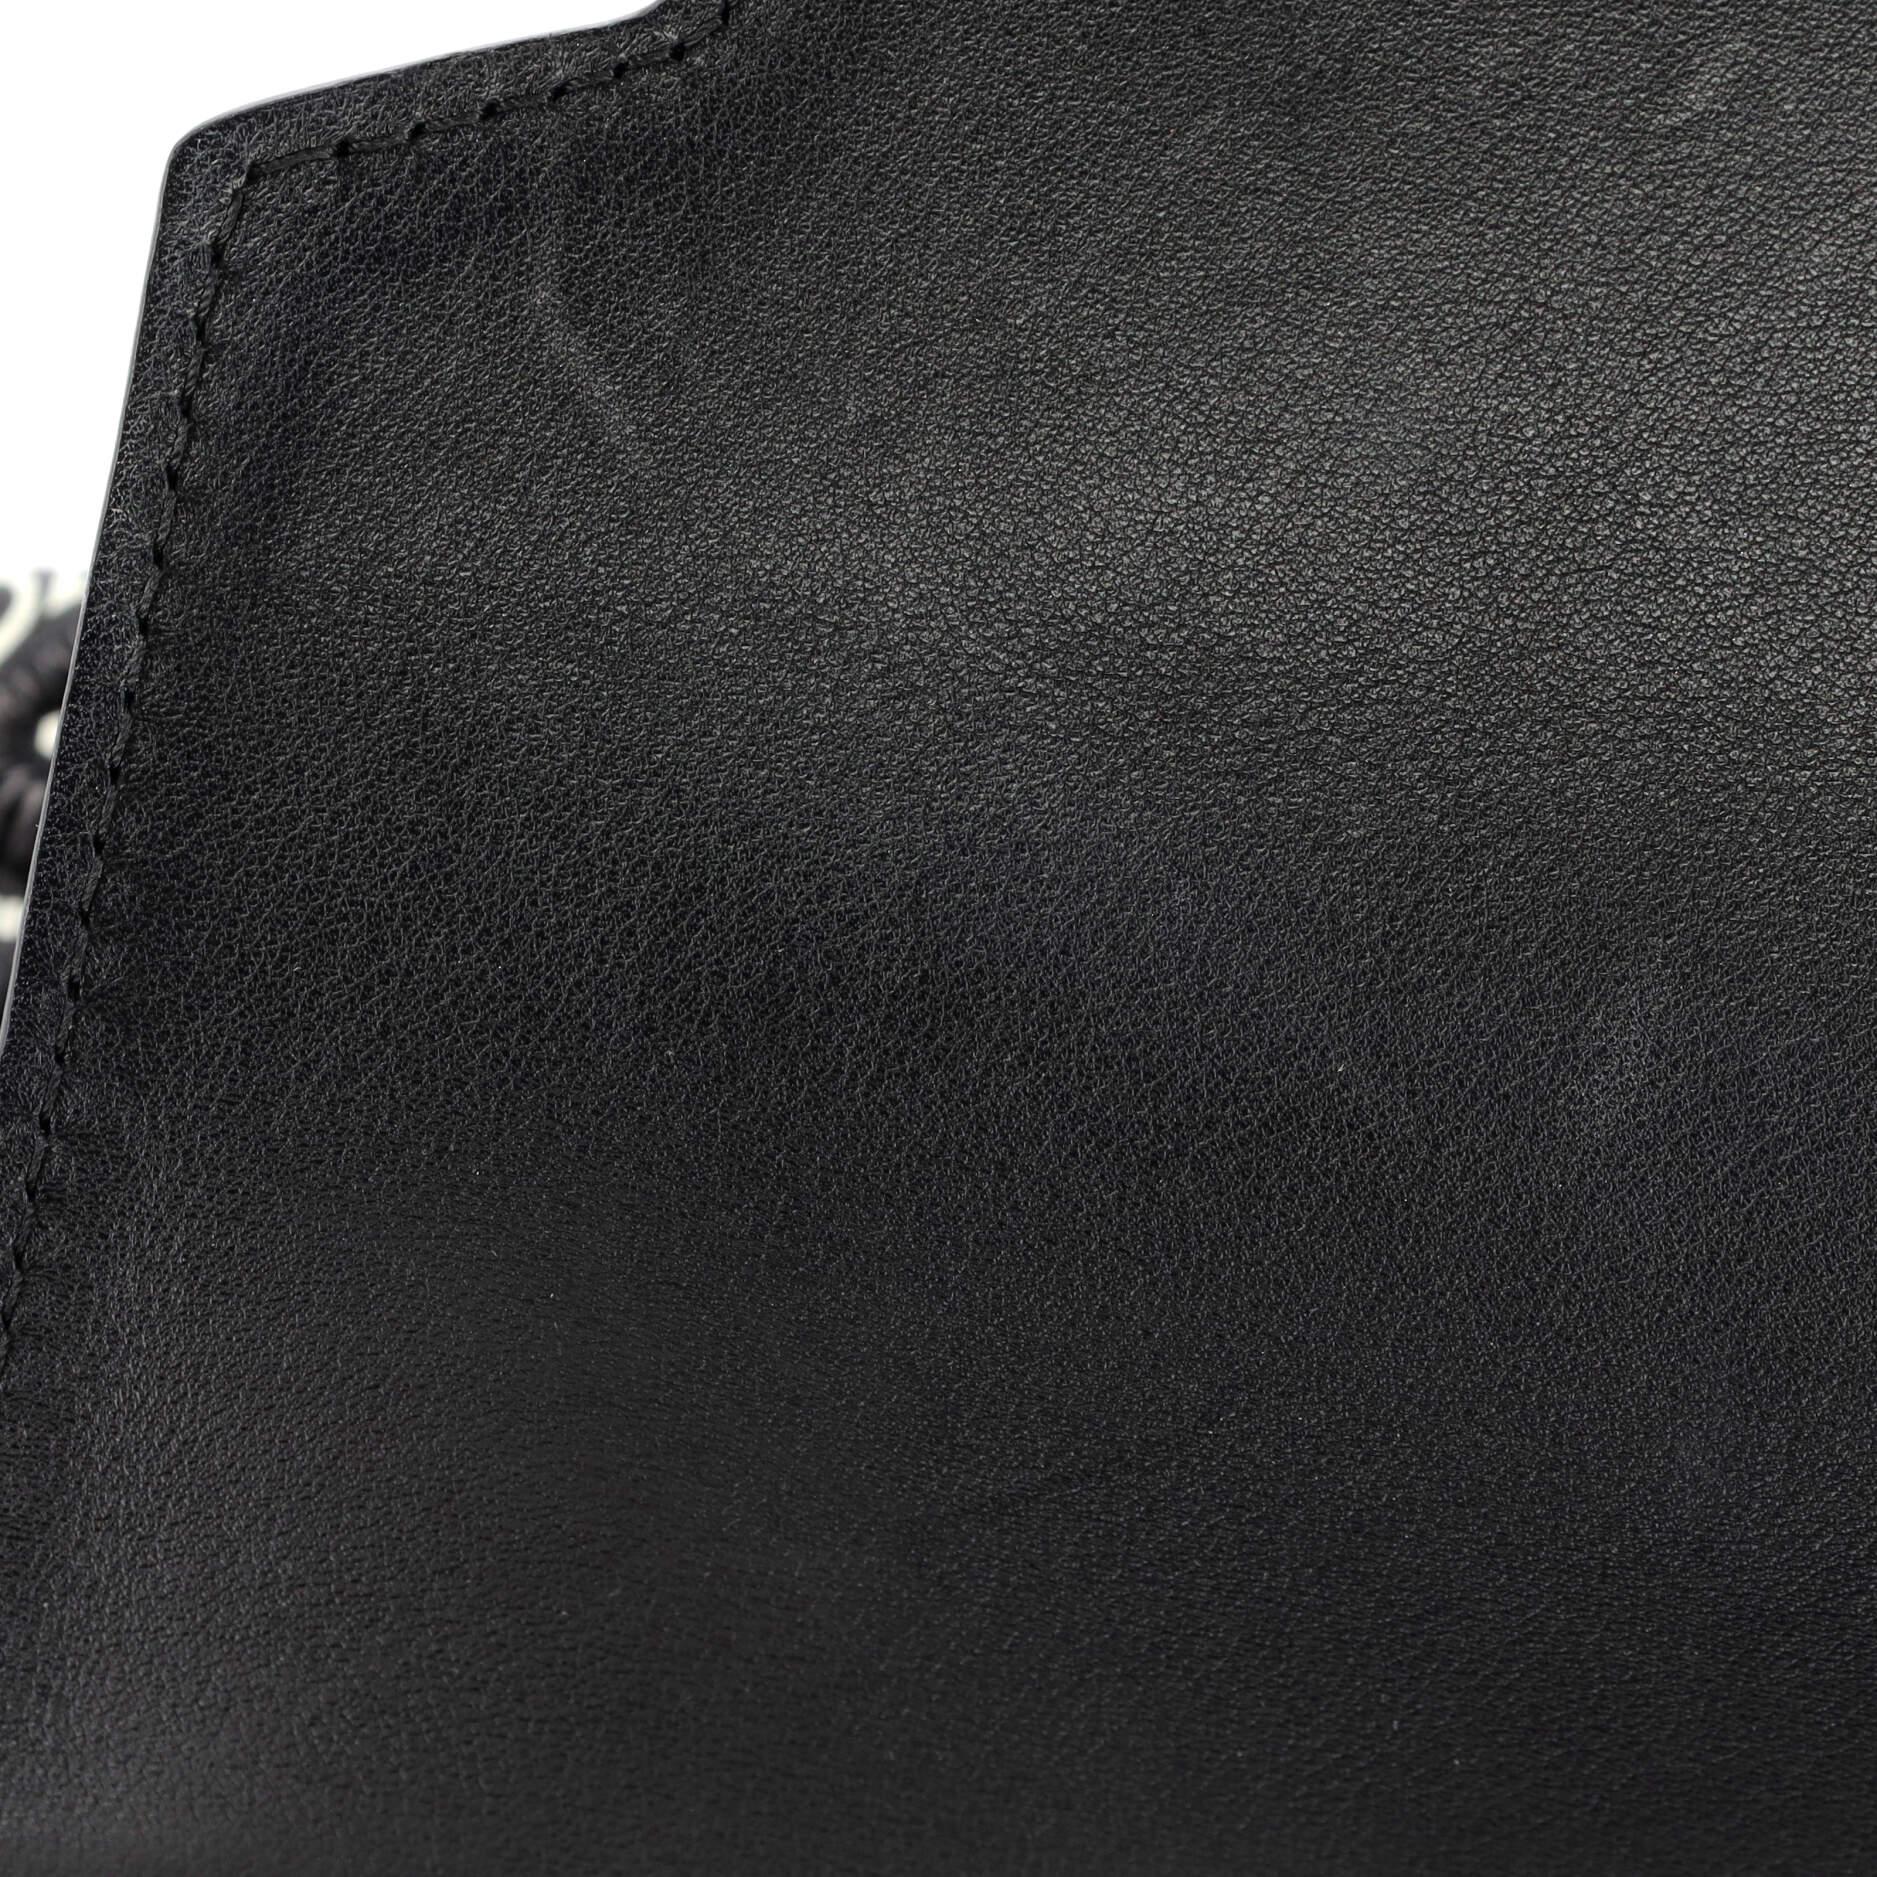 Louis Vuitton Capucines Bag Limited Edition Since 1854 Monogram Calfskin PM 3